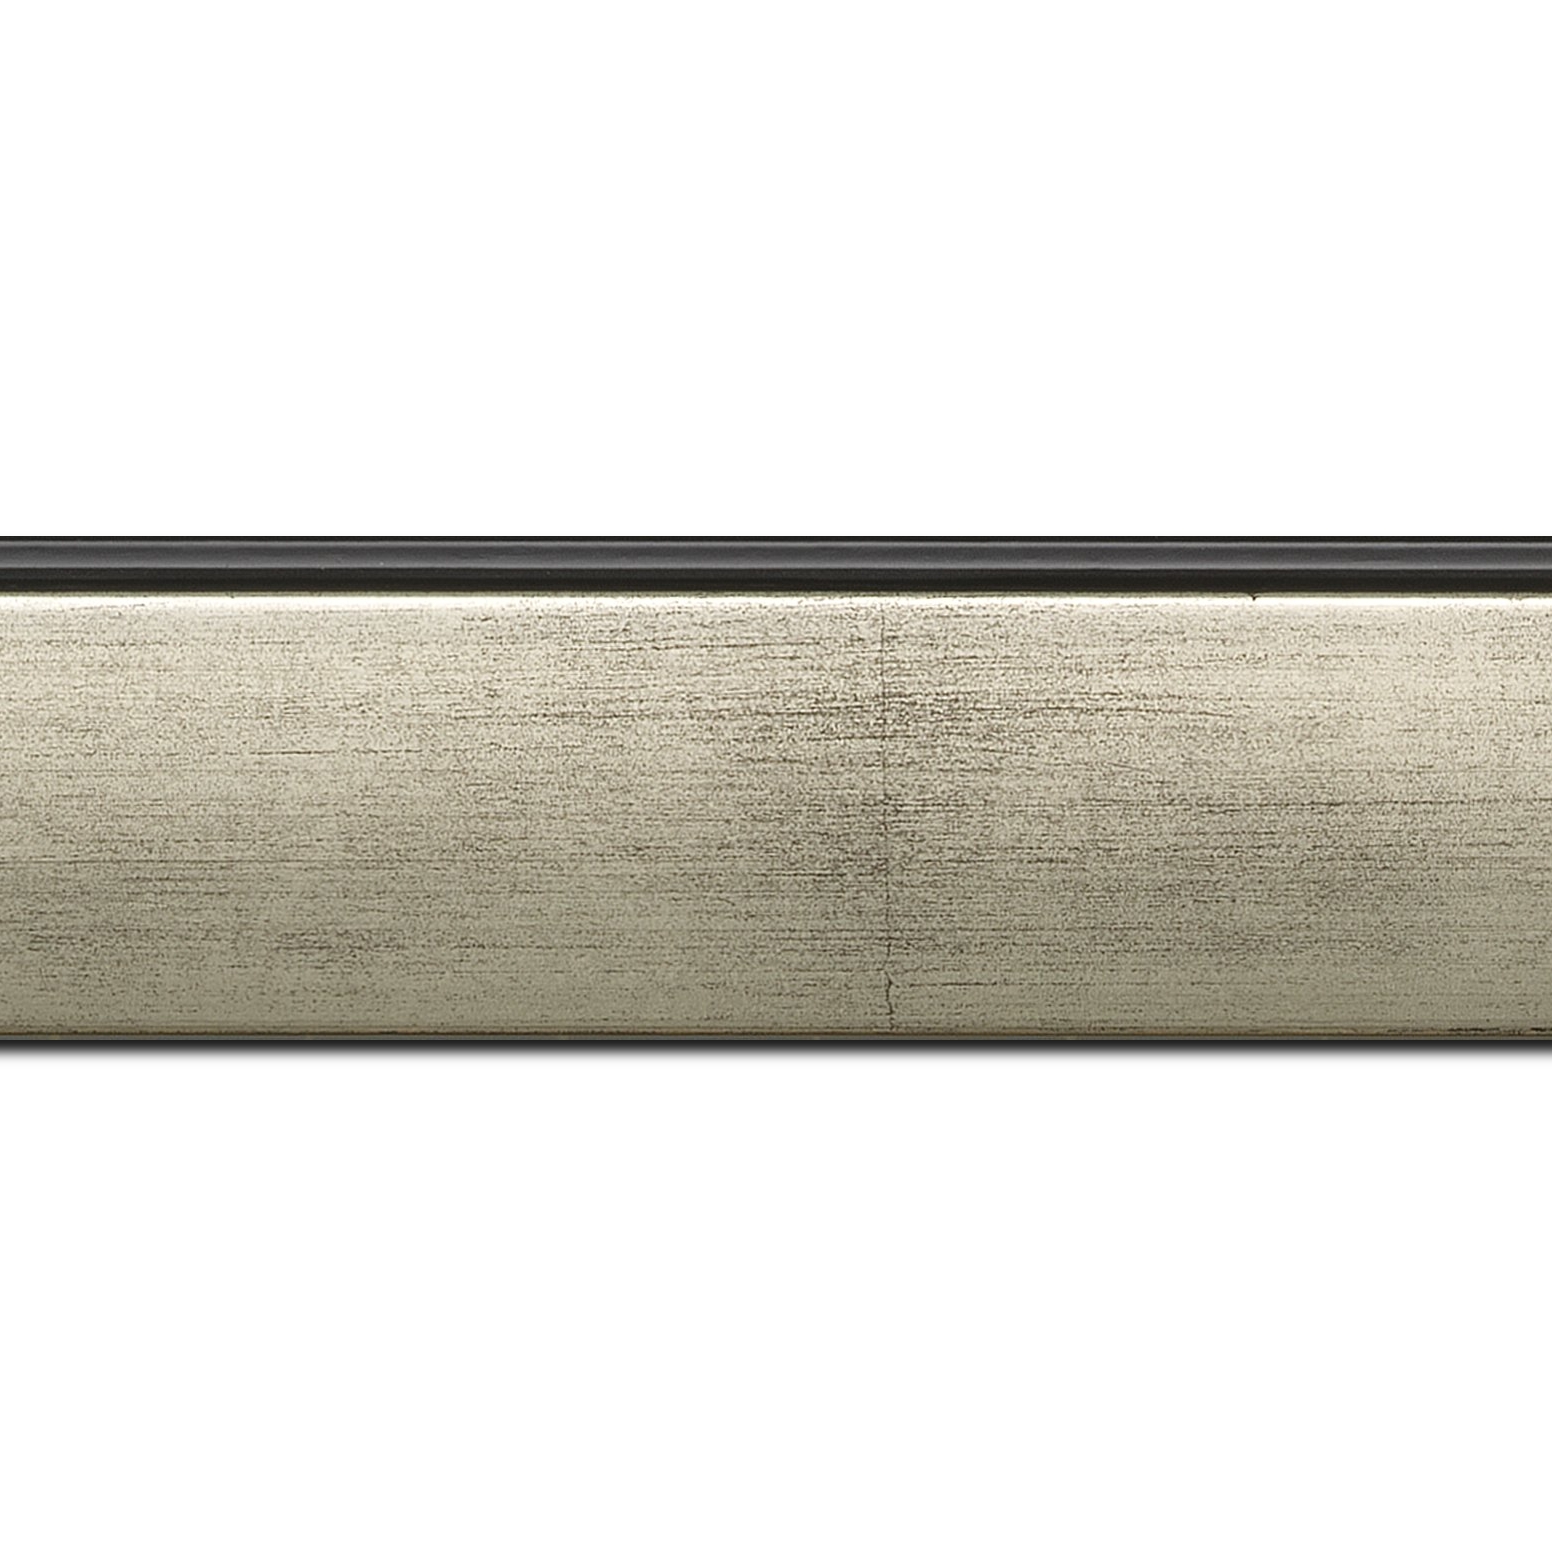 Baguette longueur 1.40m bois profil en pente méplat largeur 4.8cm argent satiné surligné par une gorge extérieure noire : originalité et élégance assurée